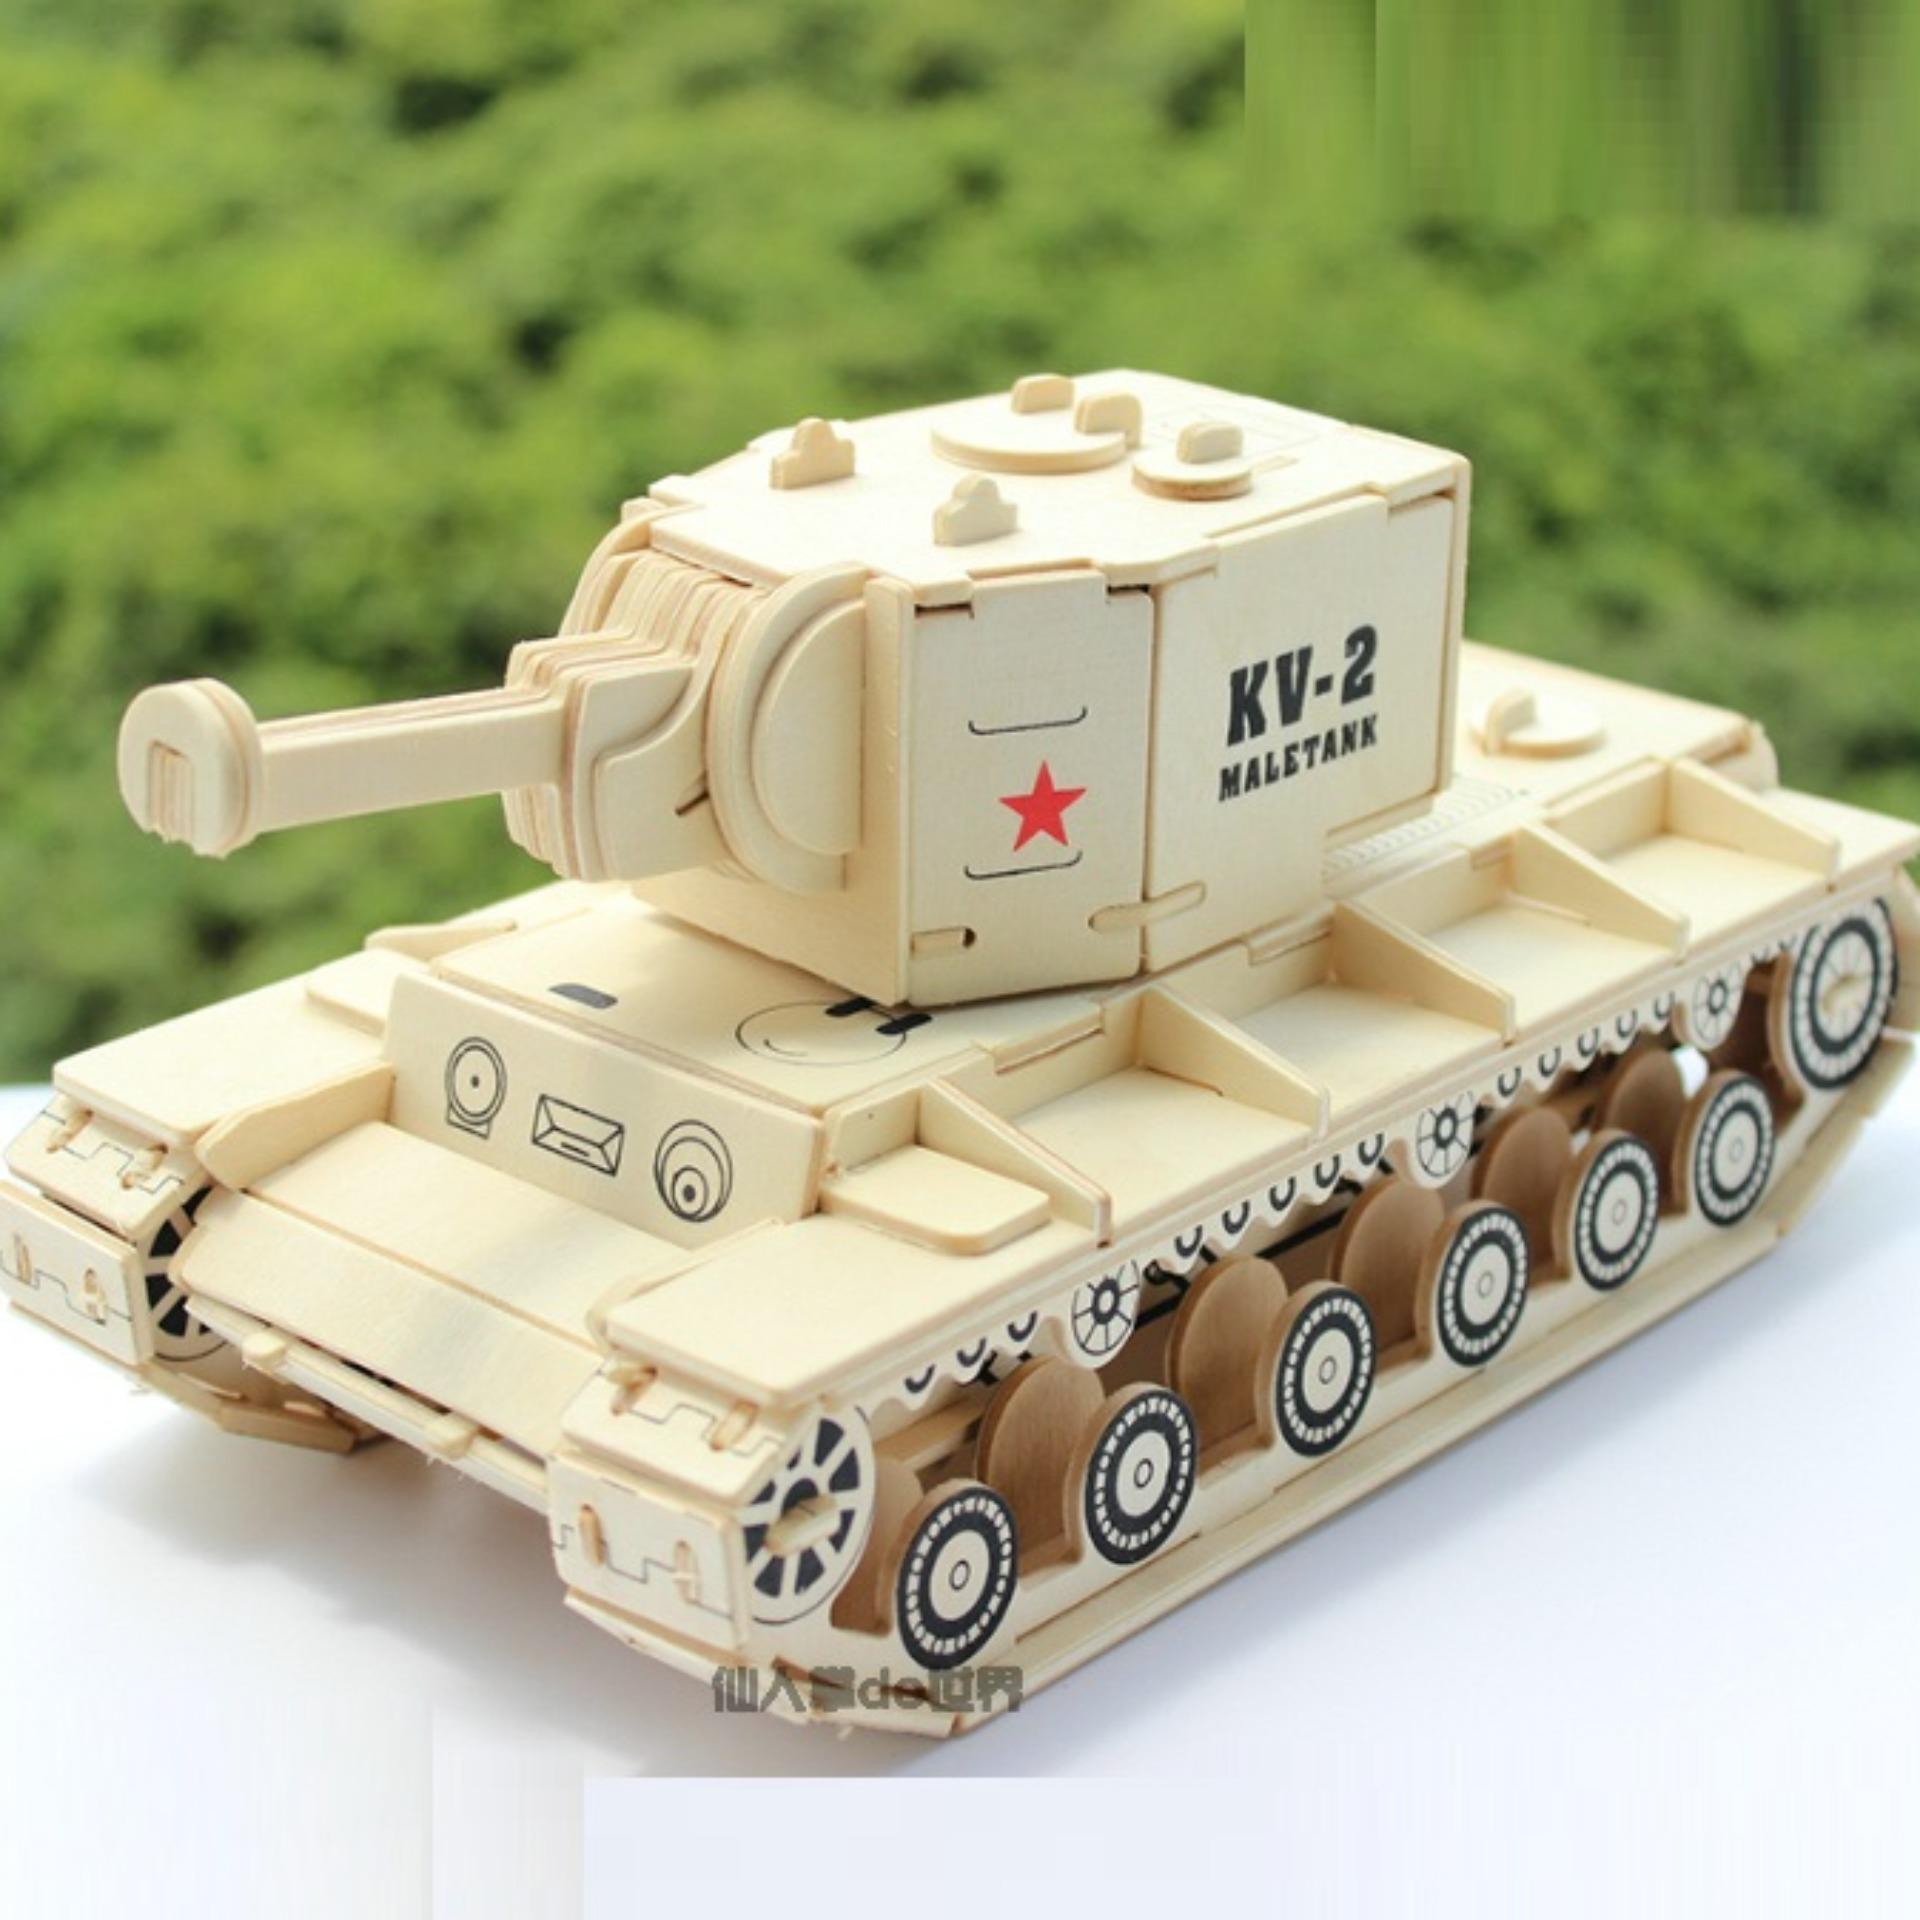 Bạn muốn tạo một mô hình xe tăng cực kỳ độc đáo và đầy thử thách? Đồ chơi lắp ráp gỗ 3D Mô hình Xe Tăng KV-2 sẽ giúp bạn thực hiện điều đó! Hãy cùng khám phá sự kết hợp hoàn hảo giữa sở thích và kĩ năng làm đồ chơi!